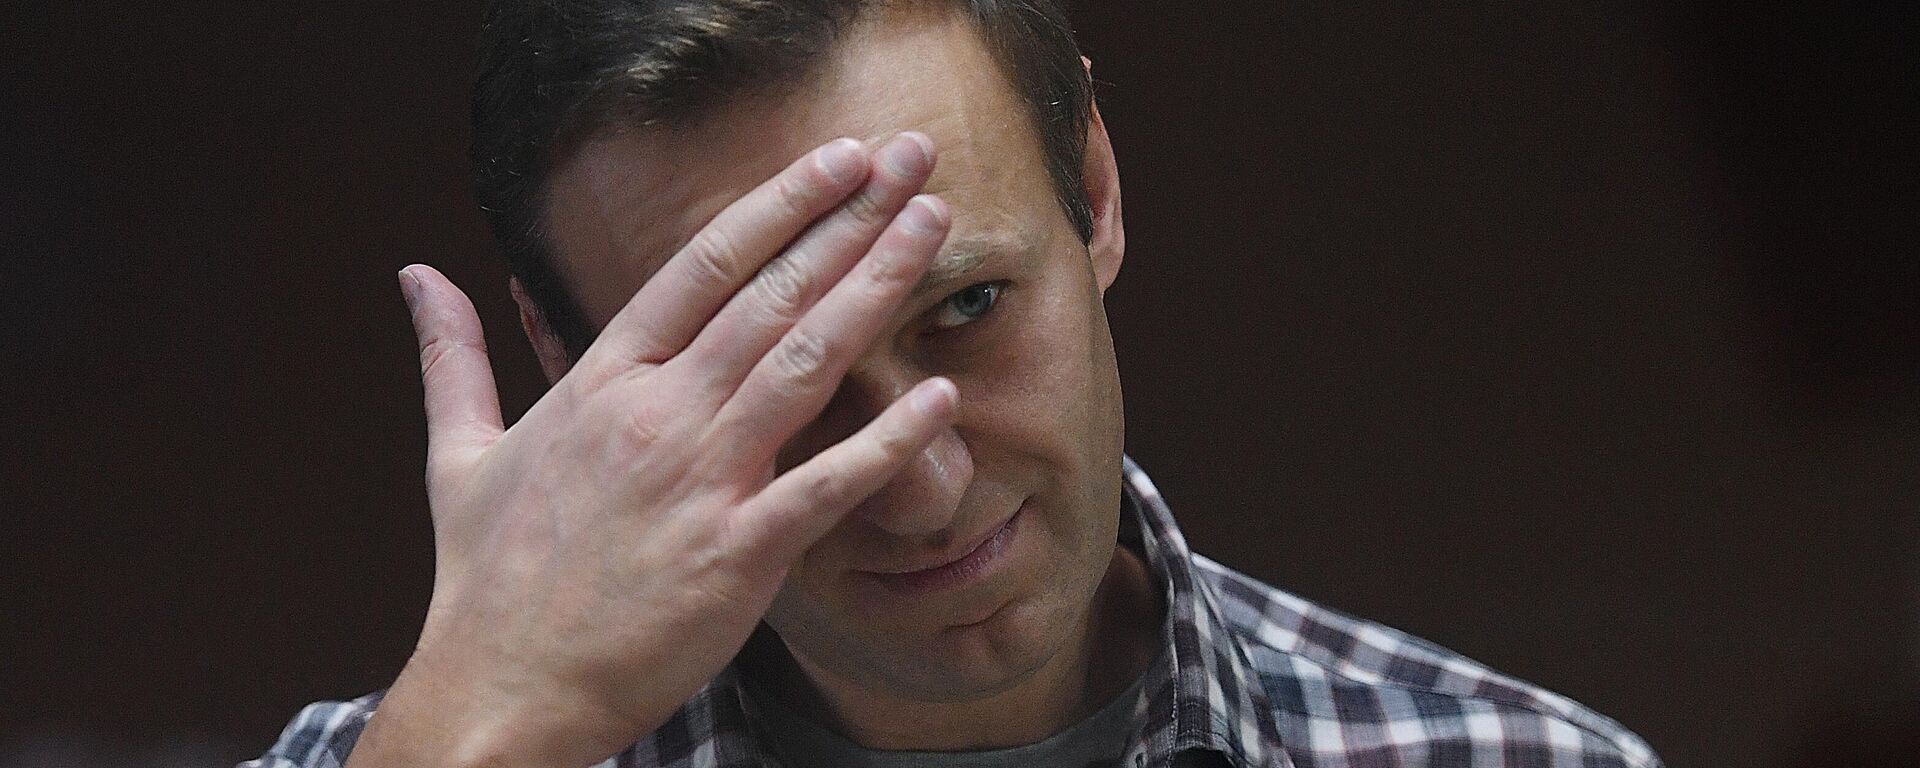 Алексей Навальный в зале Бабушкинского районного суда - Sputnik Узбекистан, 1920, 06.04.2021